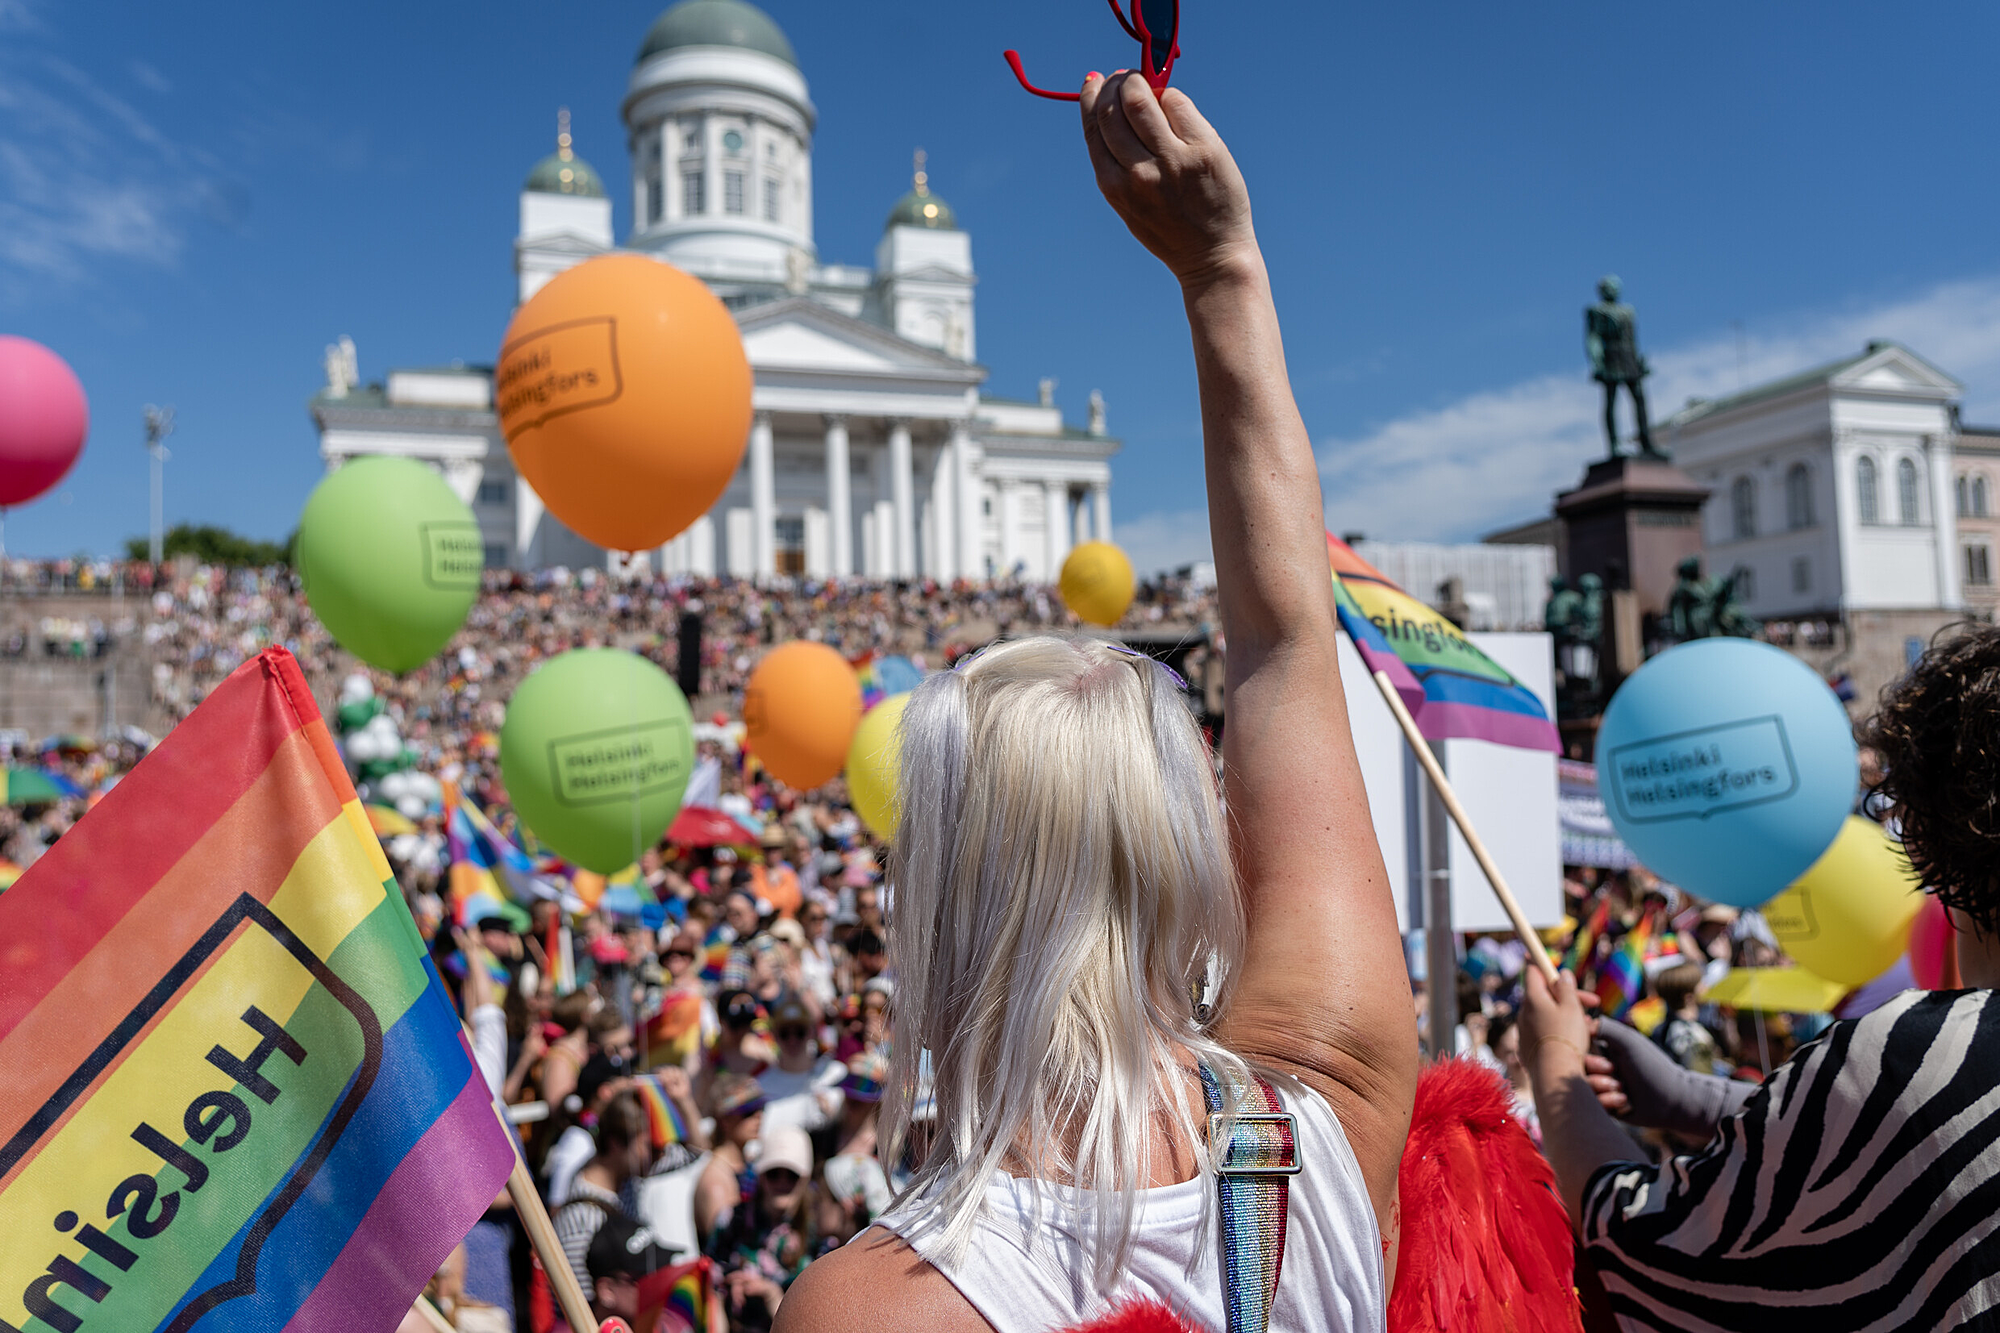 Kuzeydeki Gökkuşakları: Helsinki'nin Sevgiyi, Işığı ve Özgürlüğü Kucaklaması